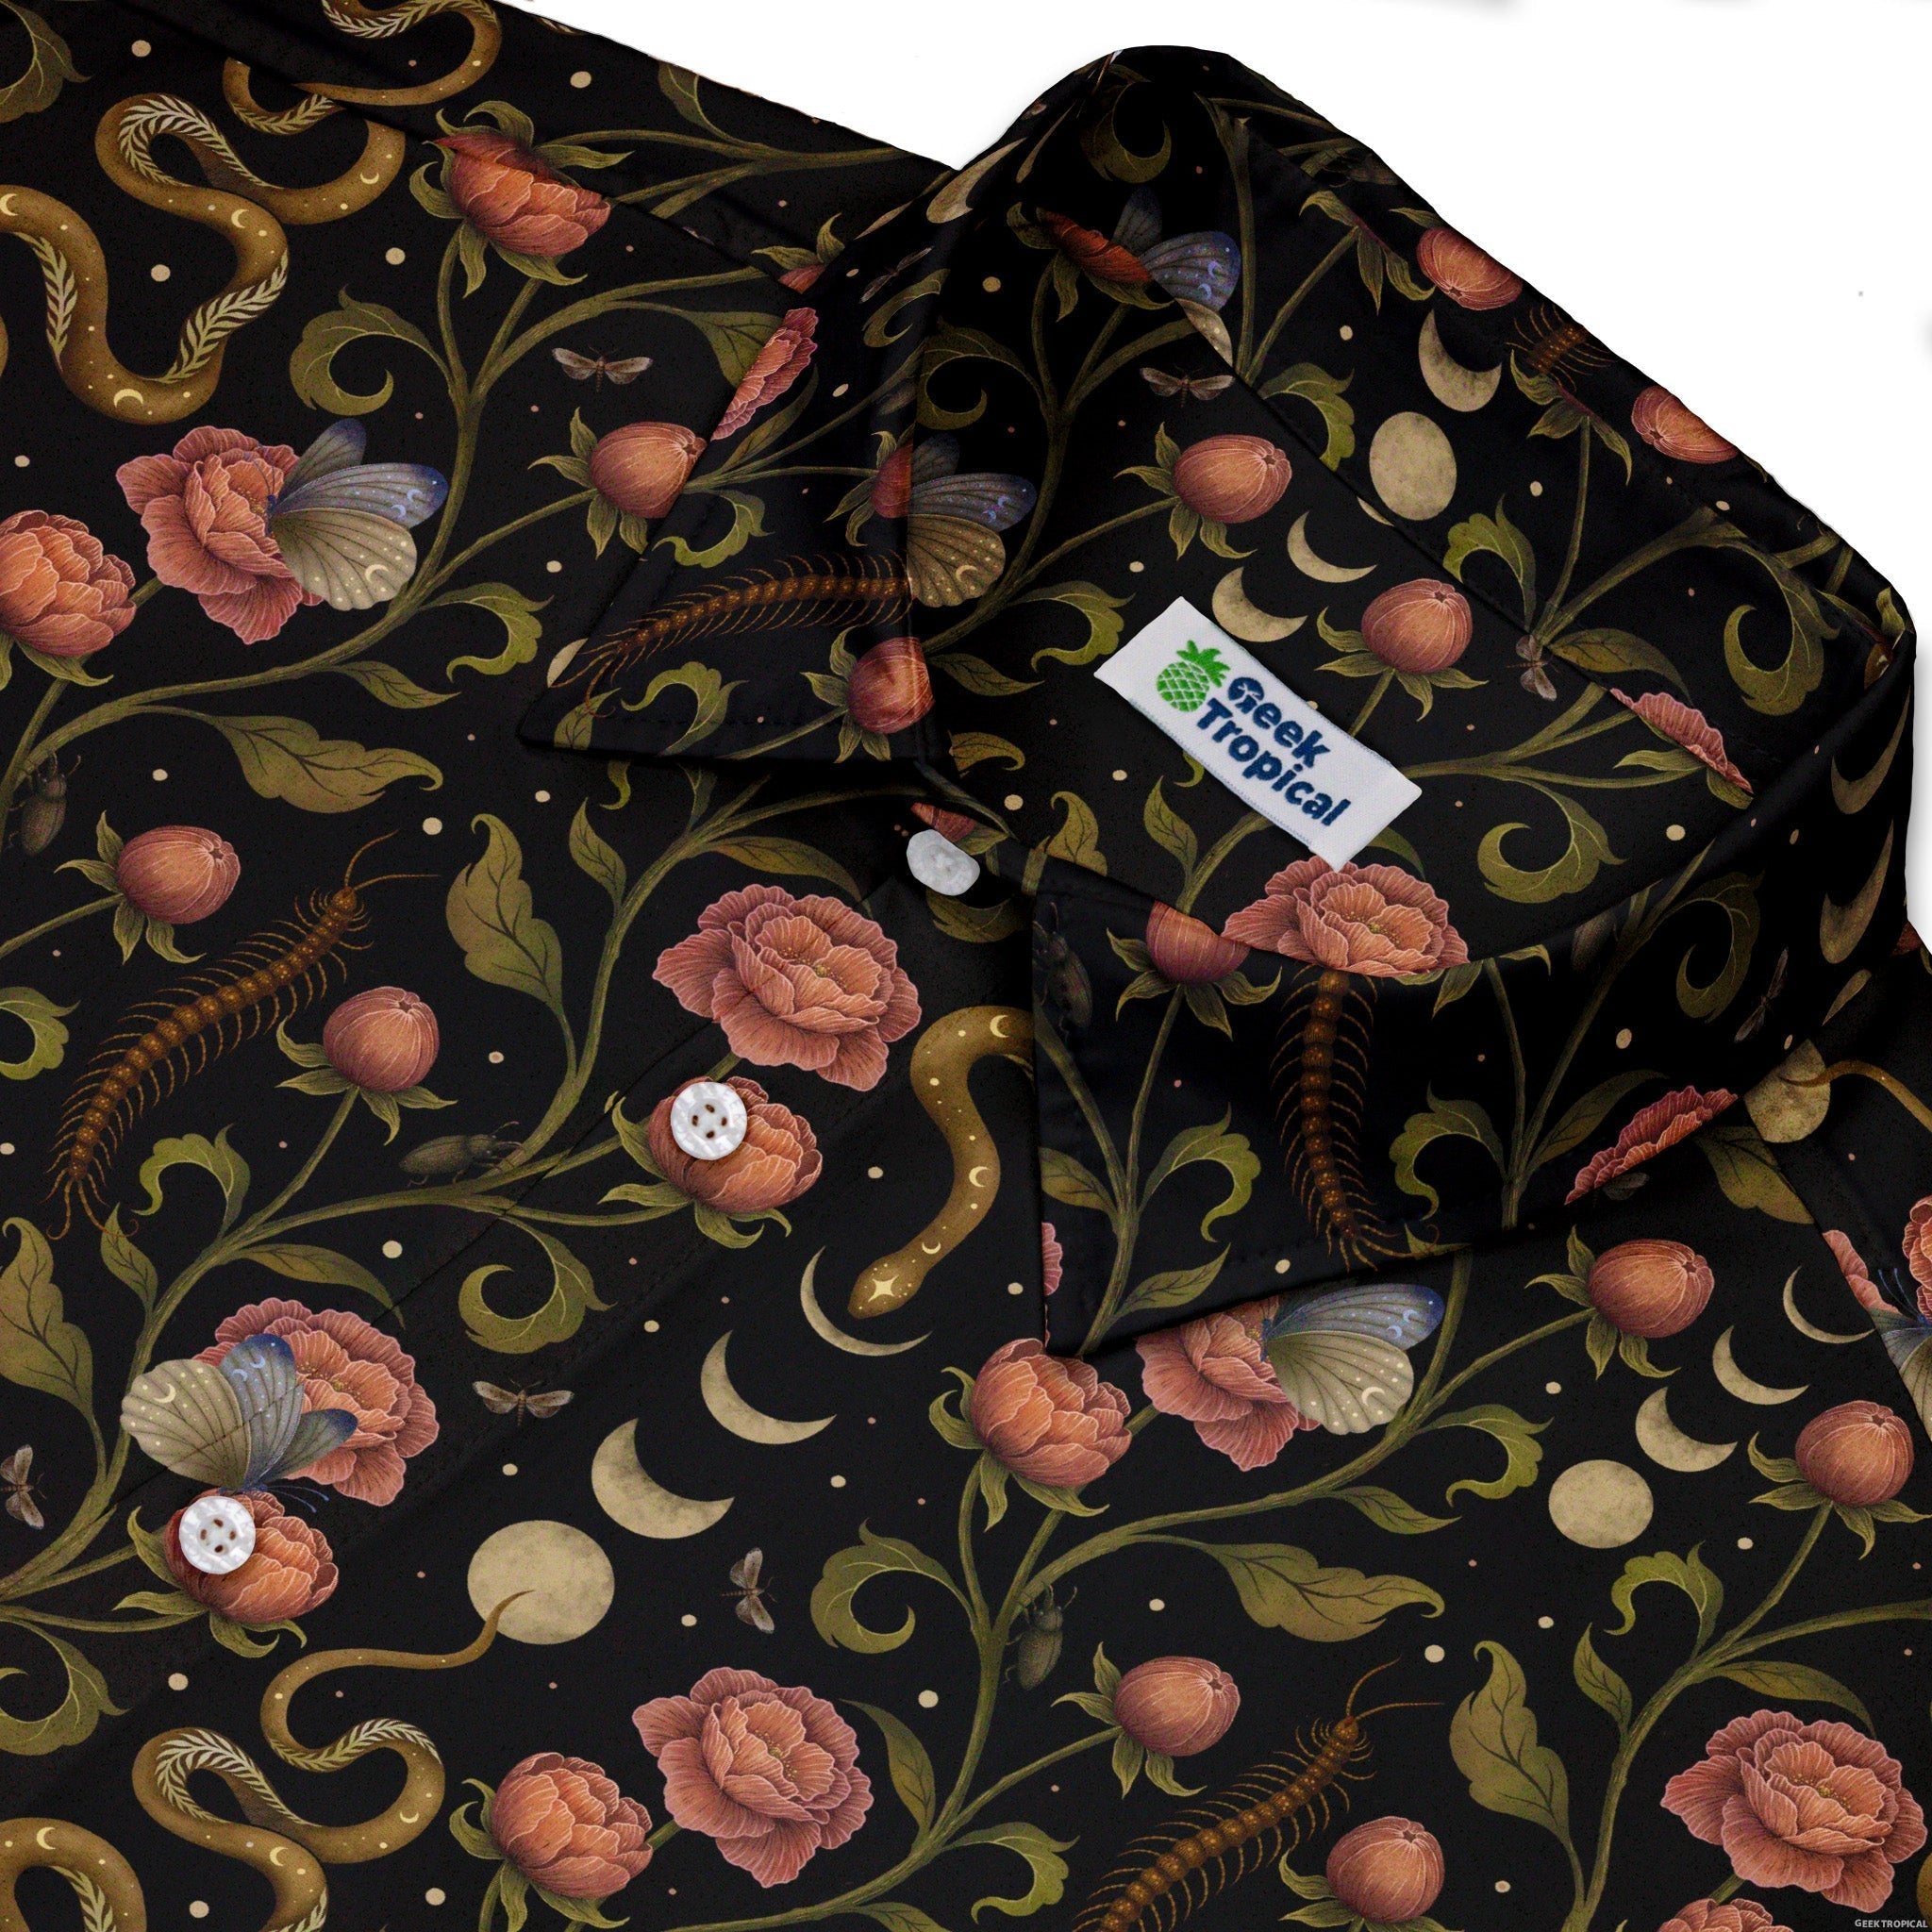 Episodic Serpent Garden Pink Button Up Shirt - XS - Hawaiian Shirt - No Pocket -